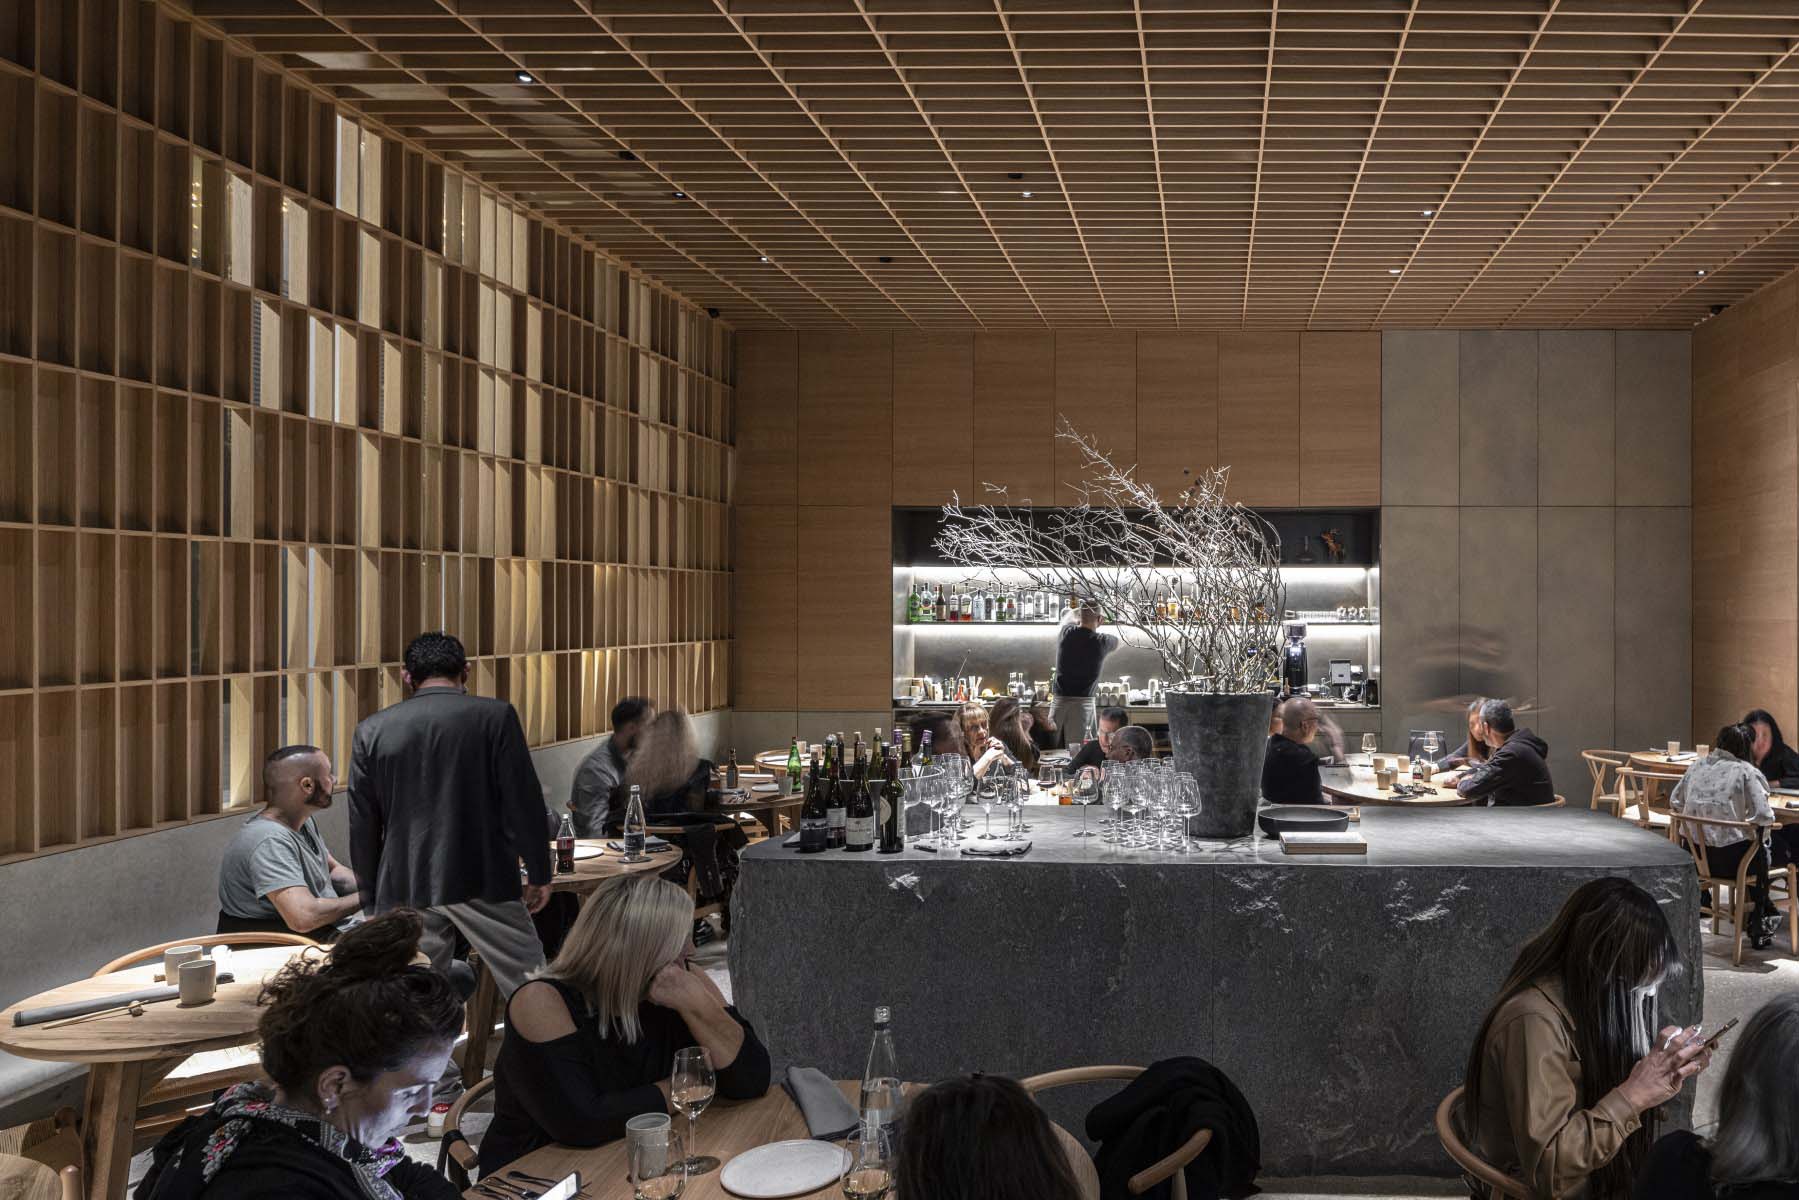 餐廳設計,國外餐廳設計,餐廳設計案例,Pitsou Kedem Architects,以色列,HIBA私享餐廳,HIBA Restaurant,Avital Shenhav-Shani